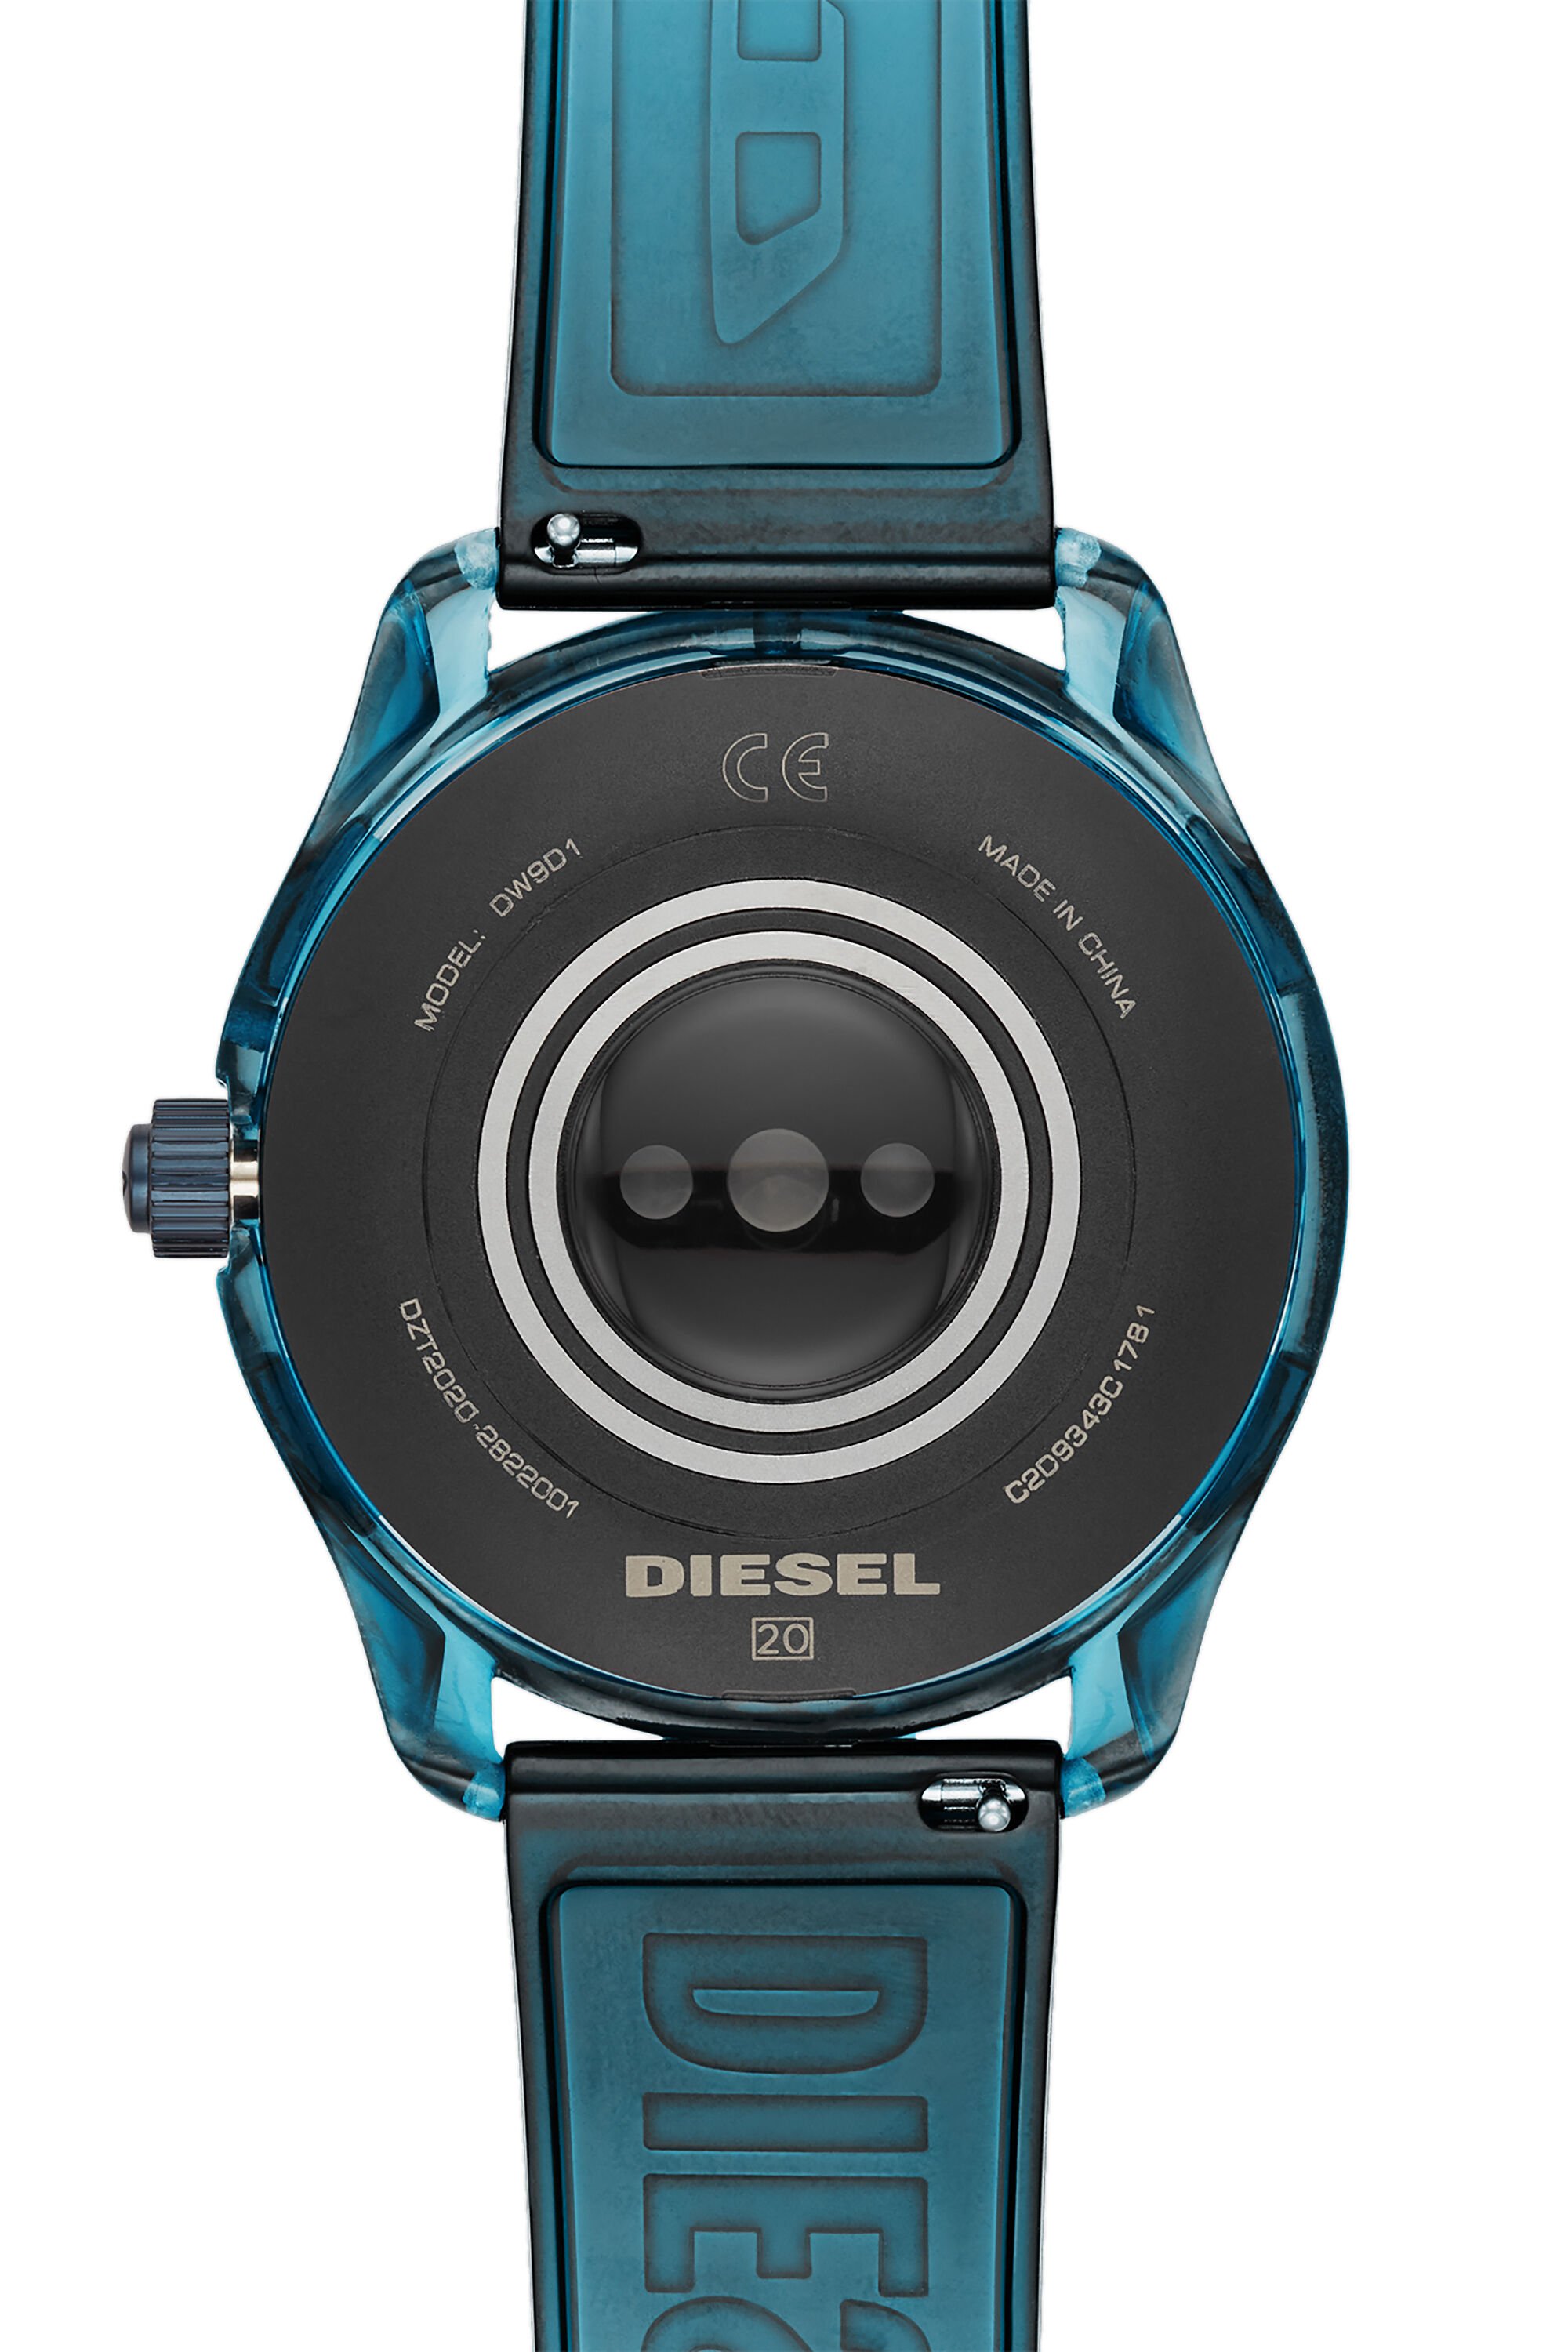 Diesel - DT2020, Azul - Image 4